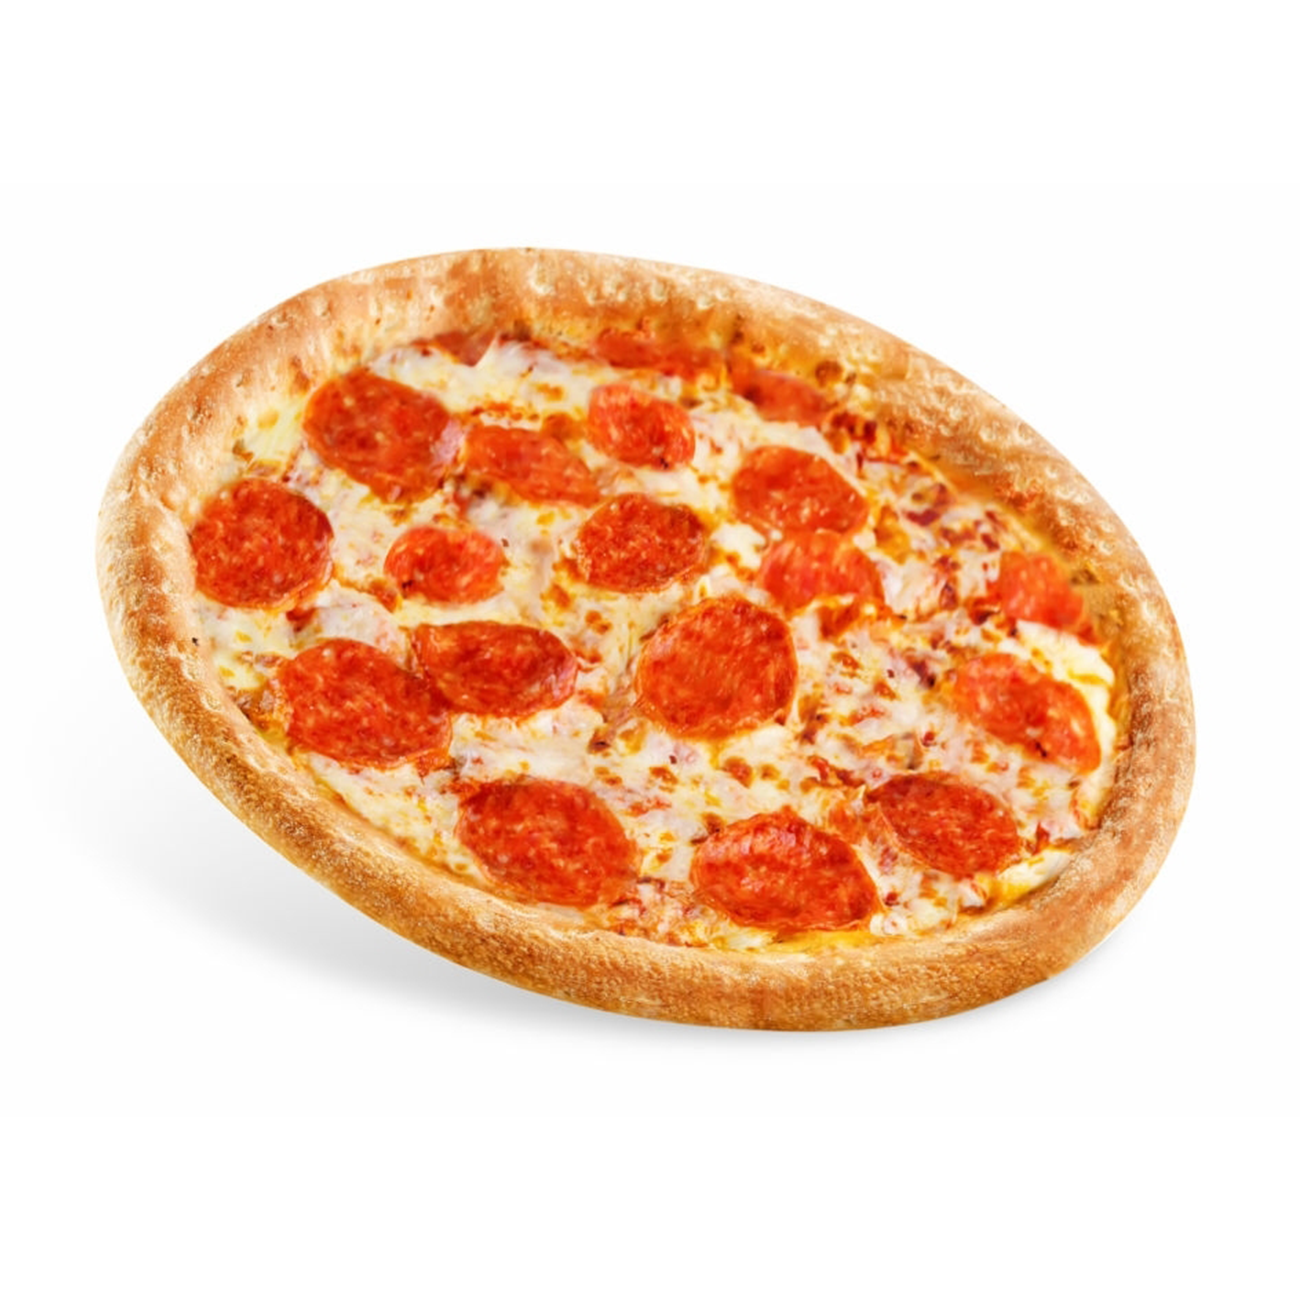 томато пицца пепперони фото 81